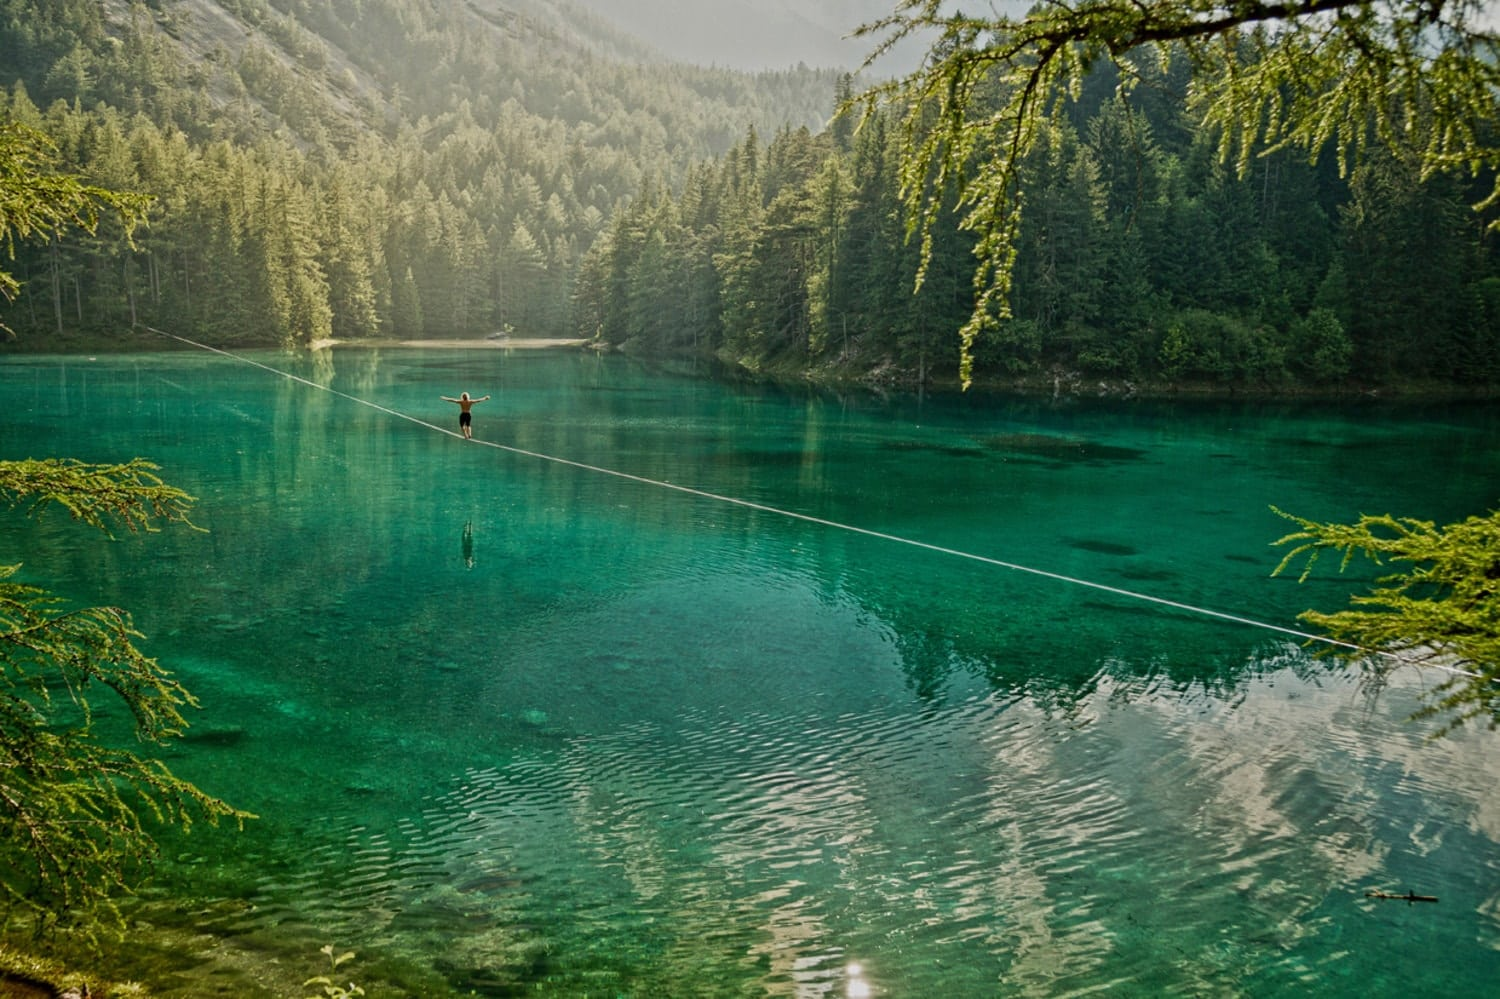 Hồ xanh là hồ nước tự nhiên, được bao quanh bởi những hòn đá lớn nhỏ và cây xanh trù phú, tạo nên bức tranh thủy mặc tuyệt đẹp